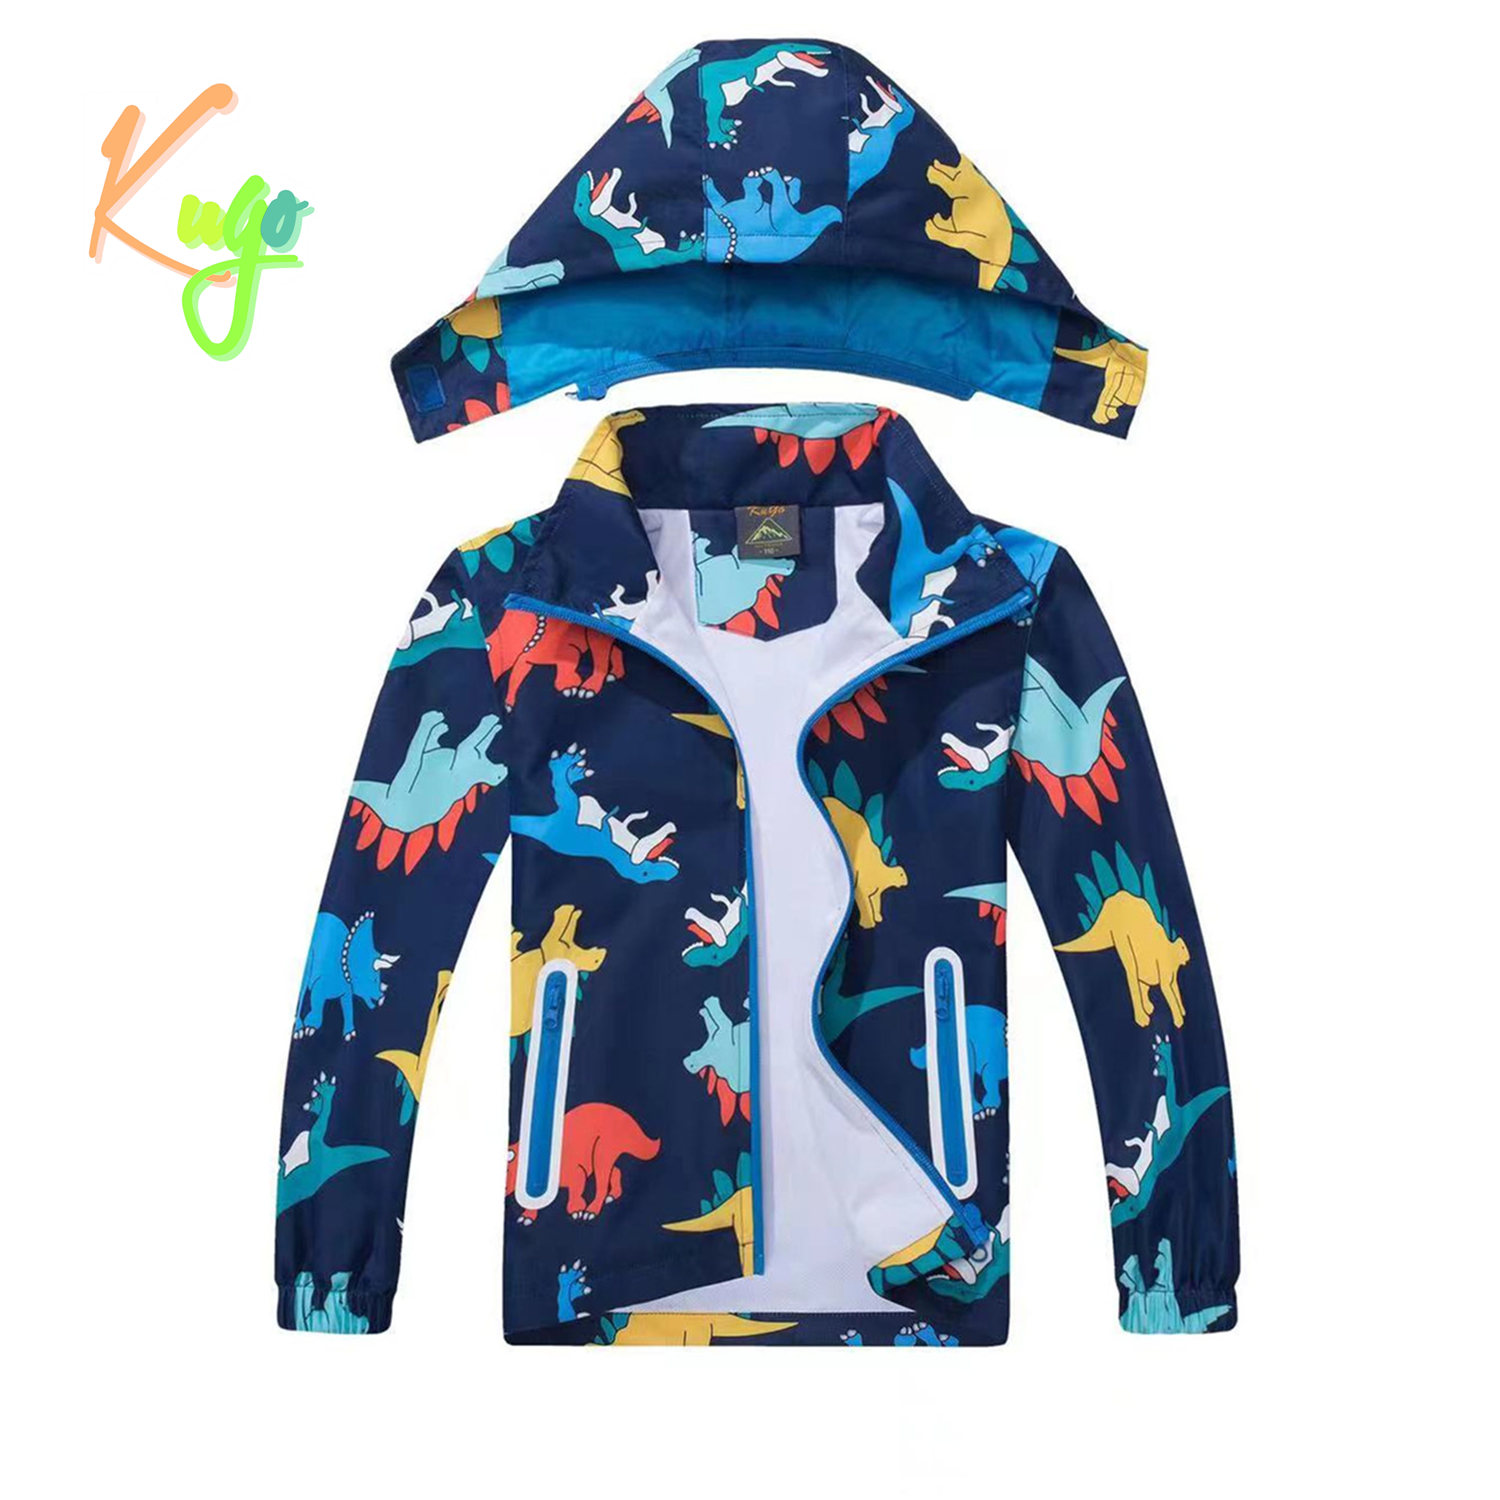 Chlapecká jarní, podzimní bunda - KUGO B2849, tmavě modrá / dinosaurus Barva: Modrá tmavě, Velikost: 98